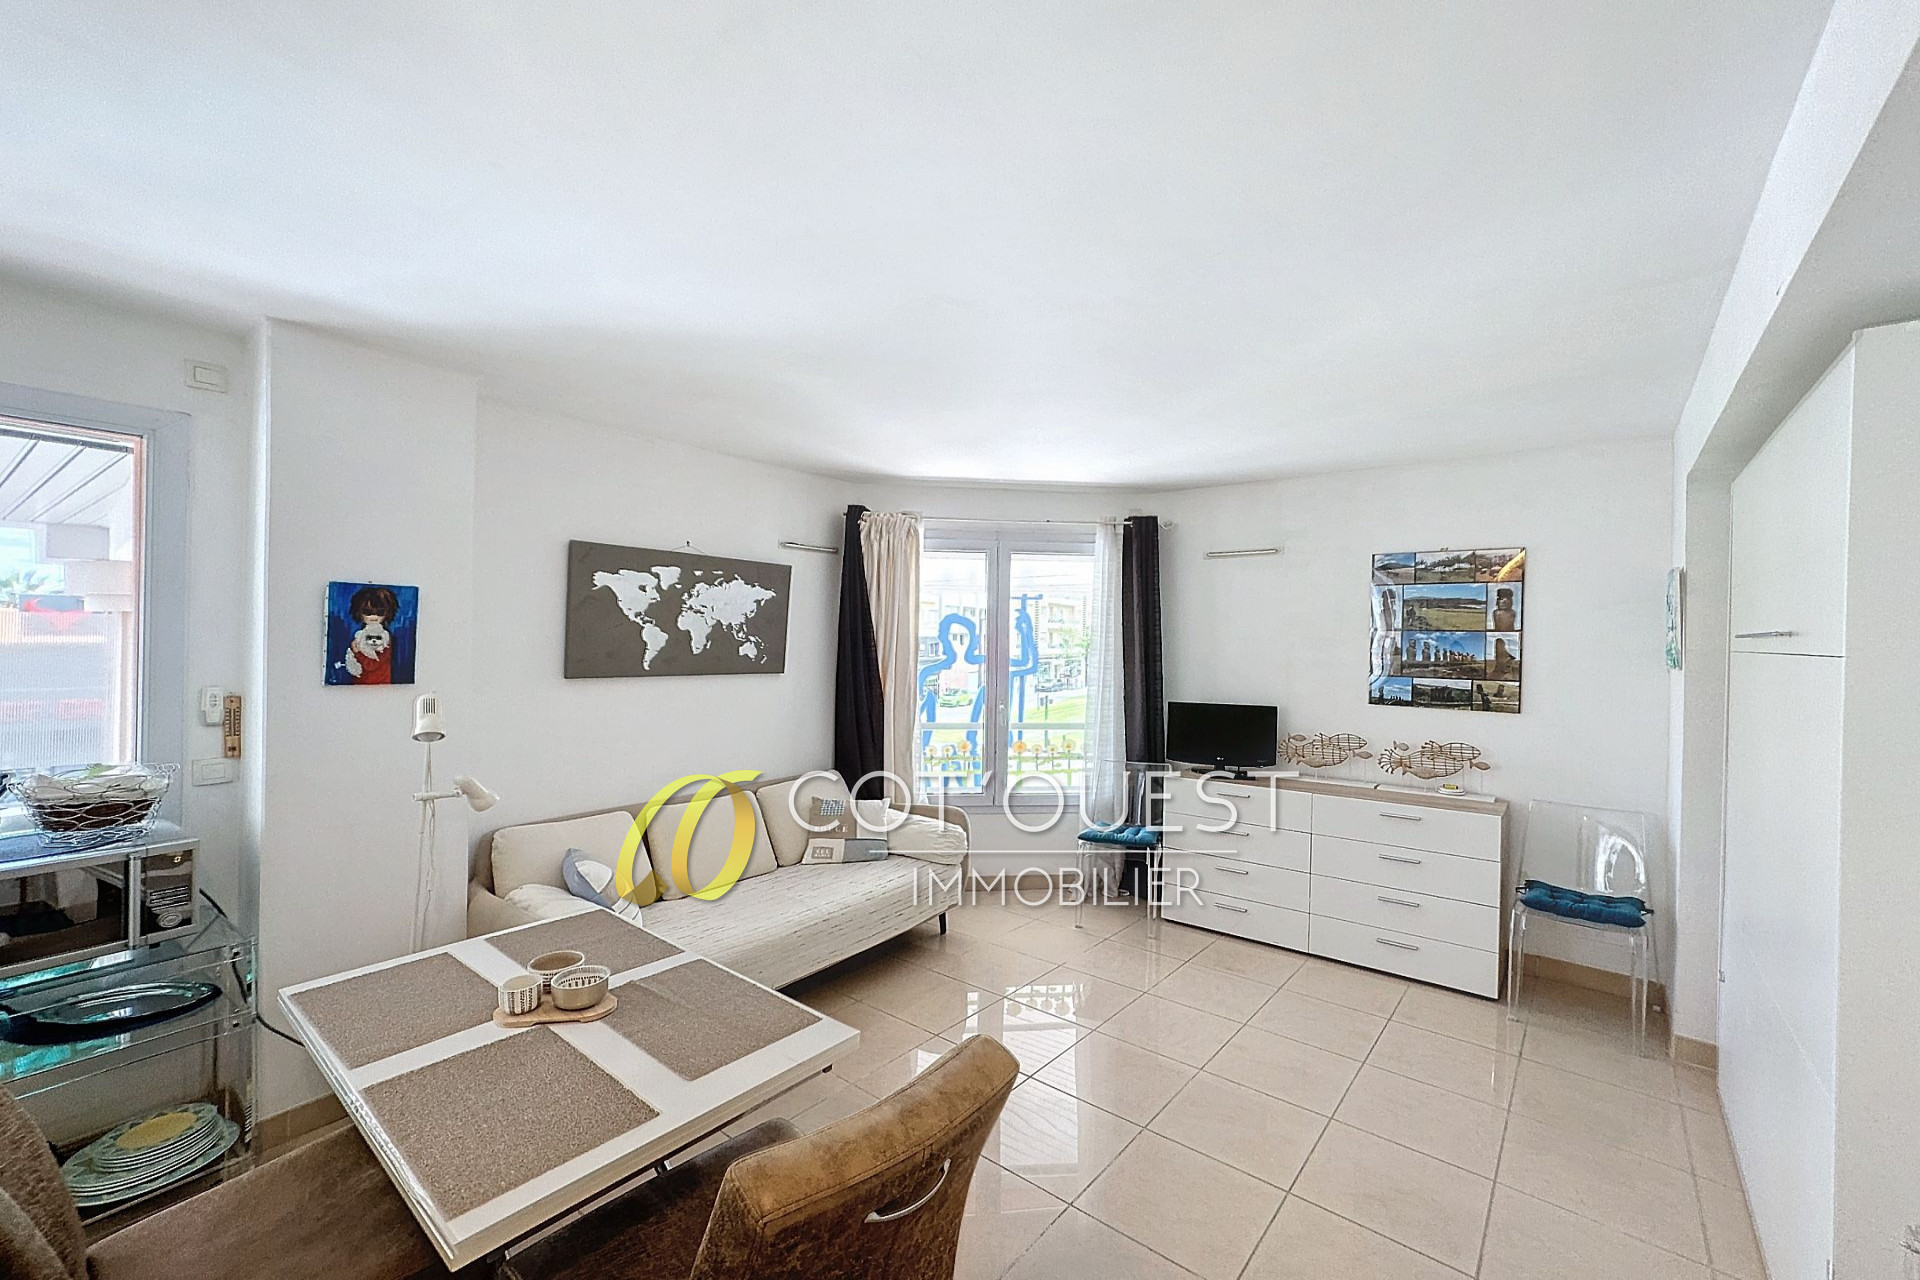 Vente Appartement 23m² à Nice (06000) - Cot'Ouest Immobilier